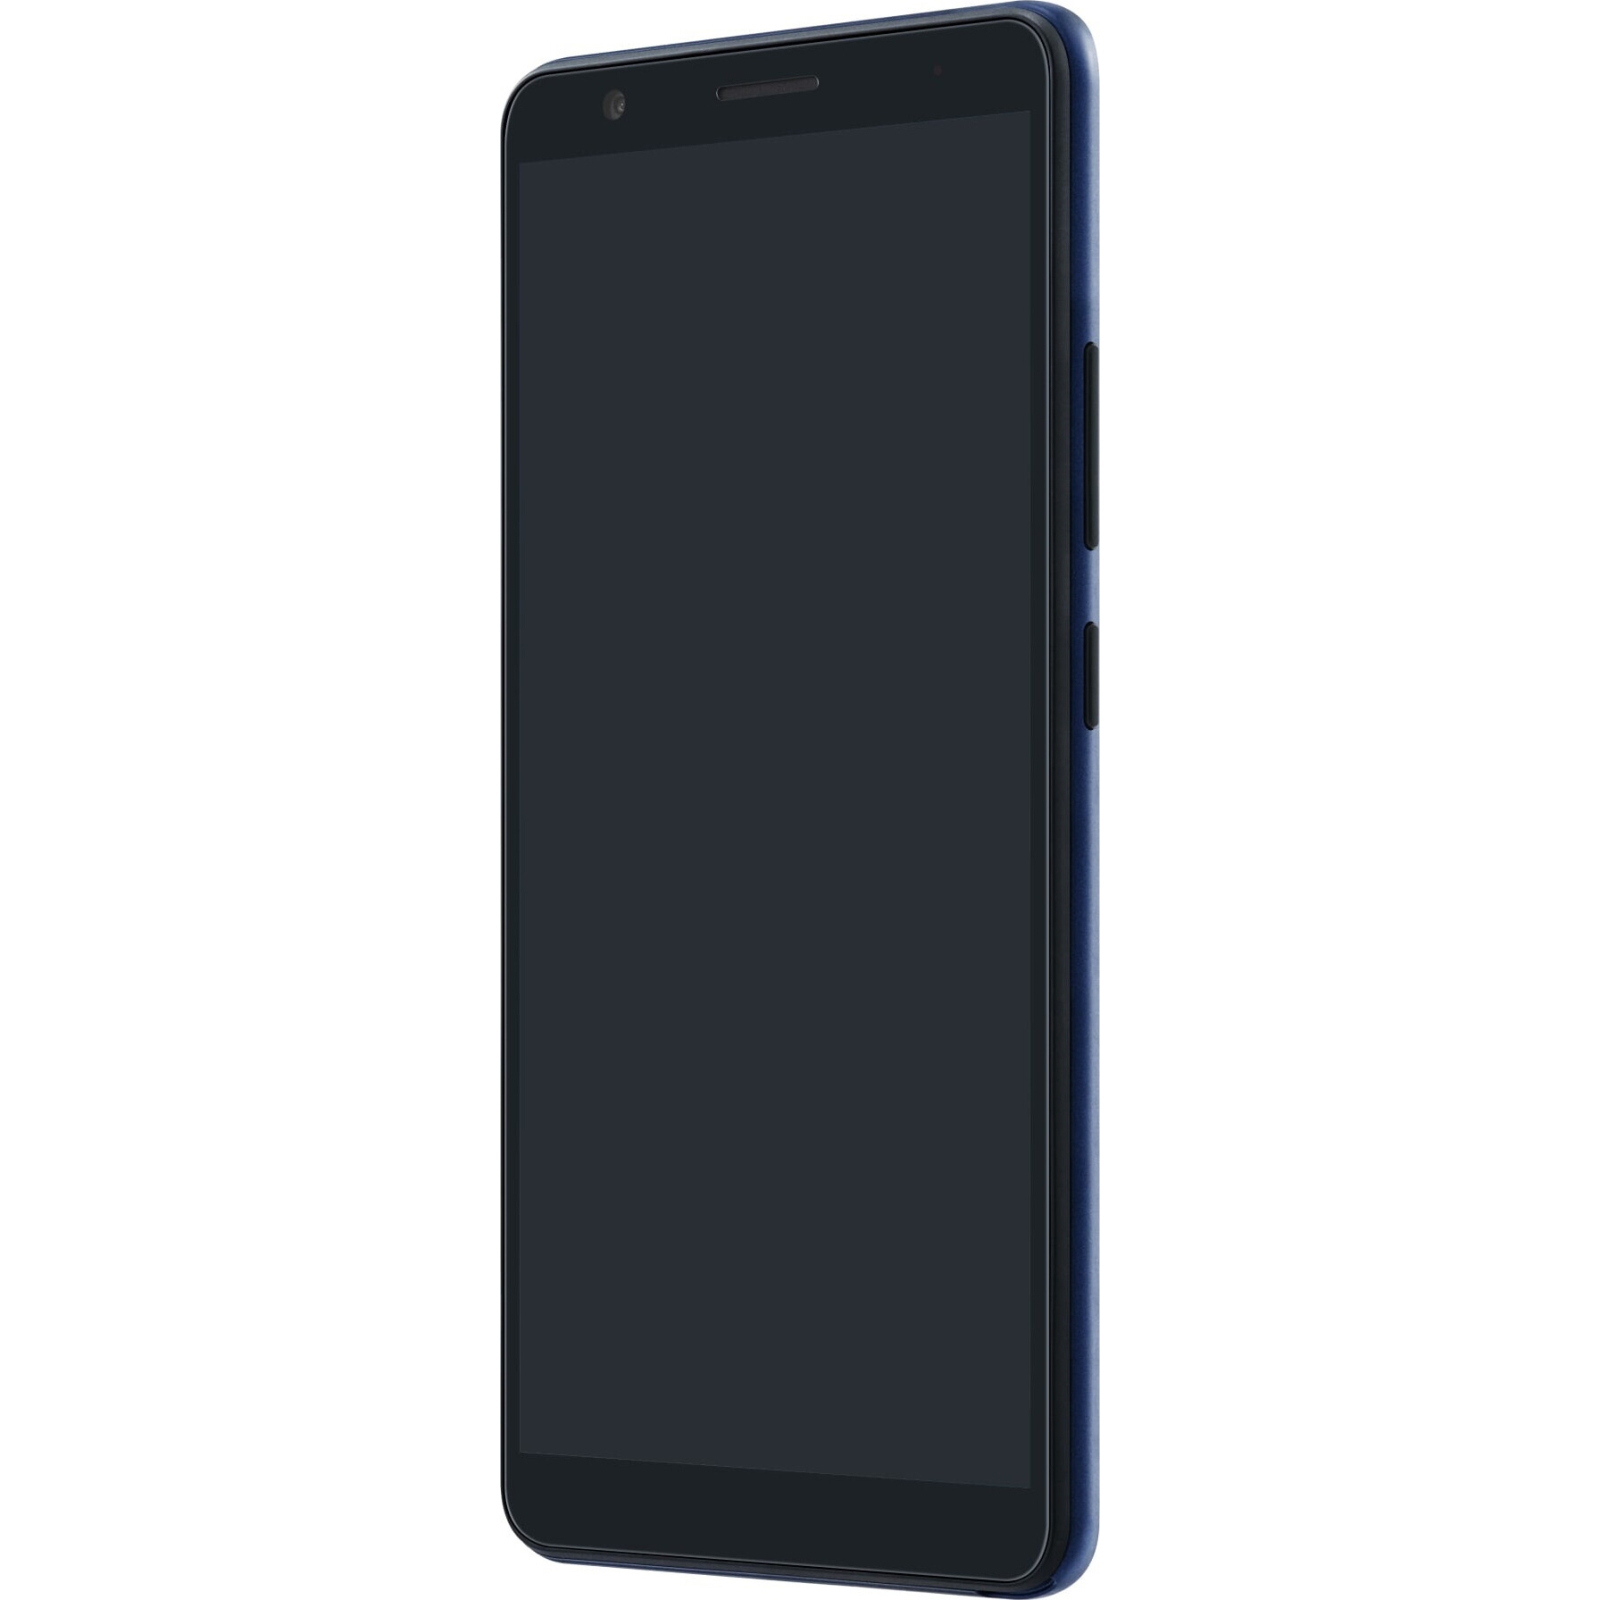 Мобильный телефон ZTE Blade L210 1/32GB Black (661249) изображение 4